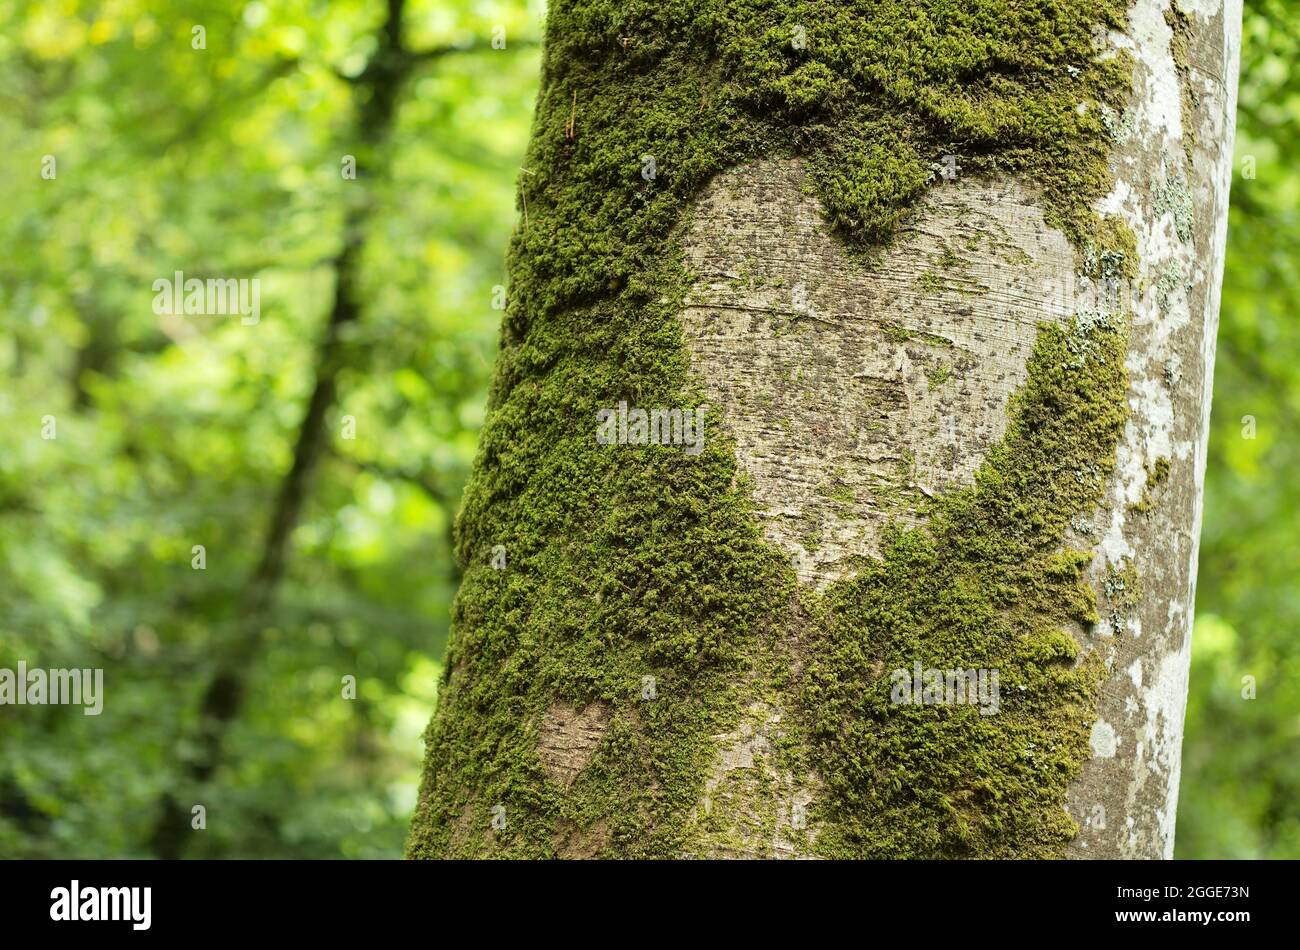 Cuore in corteccia di albero, Vallee du le Leguer, fiume del pesce migratorio, Tonquedec, Cotes-d'Armor, Bretagna, Francia Foto Stock